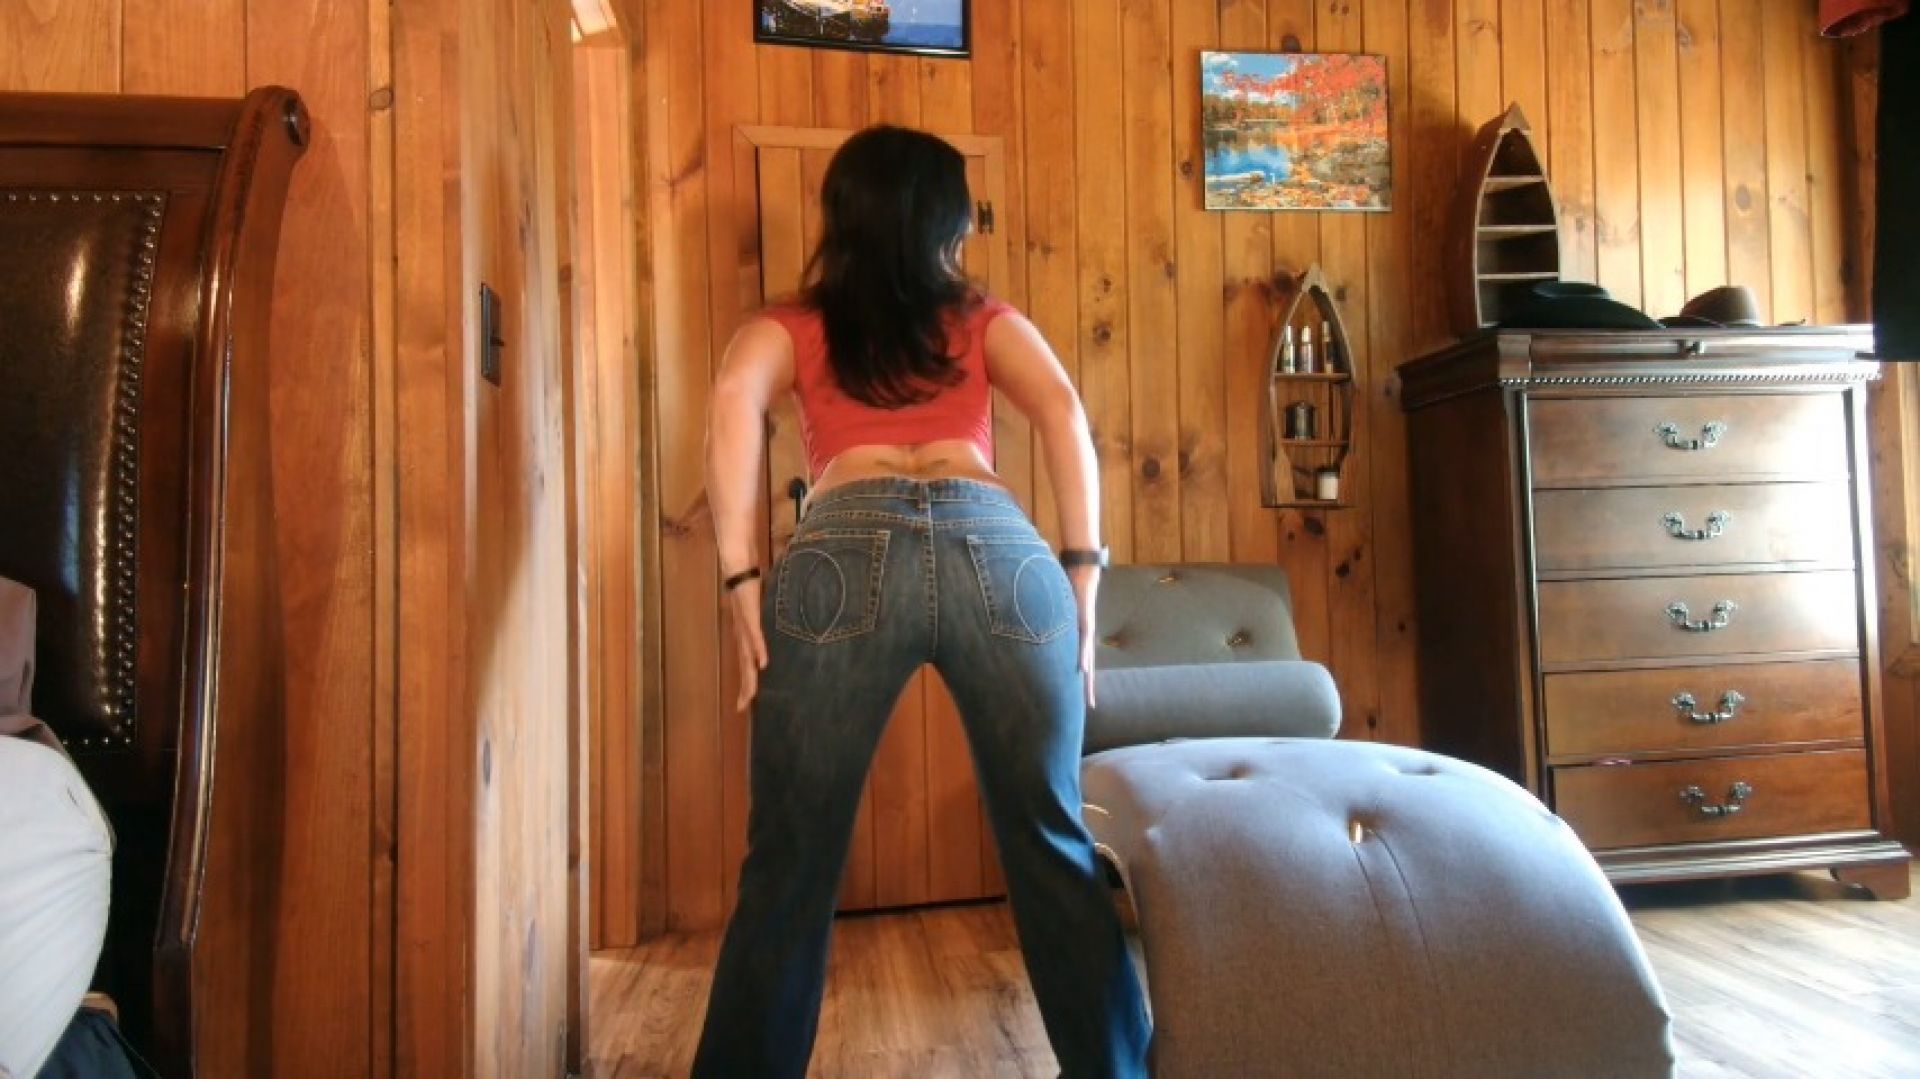 jordache jeans ass fetish and flirting fun